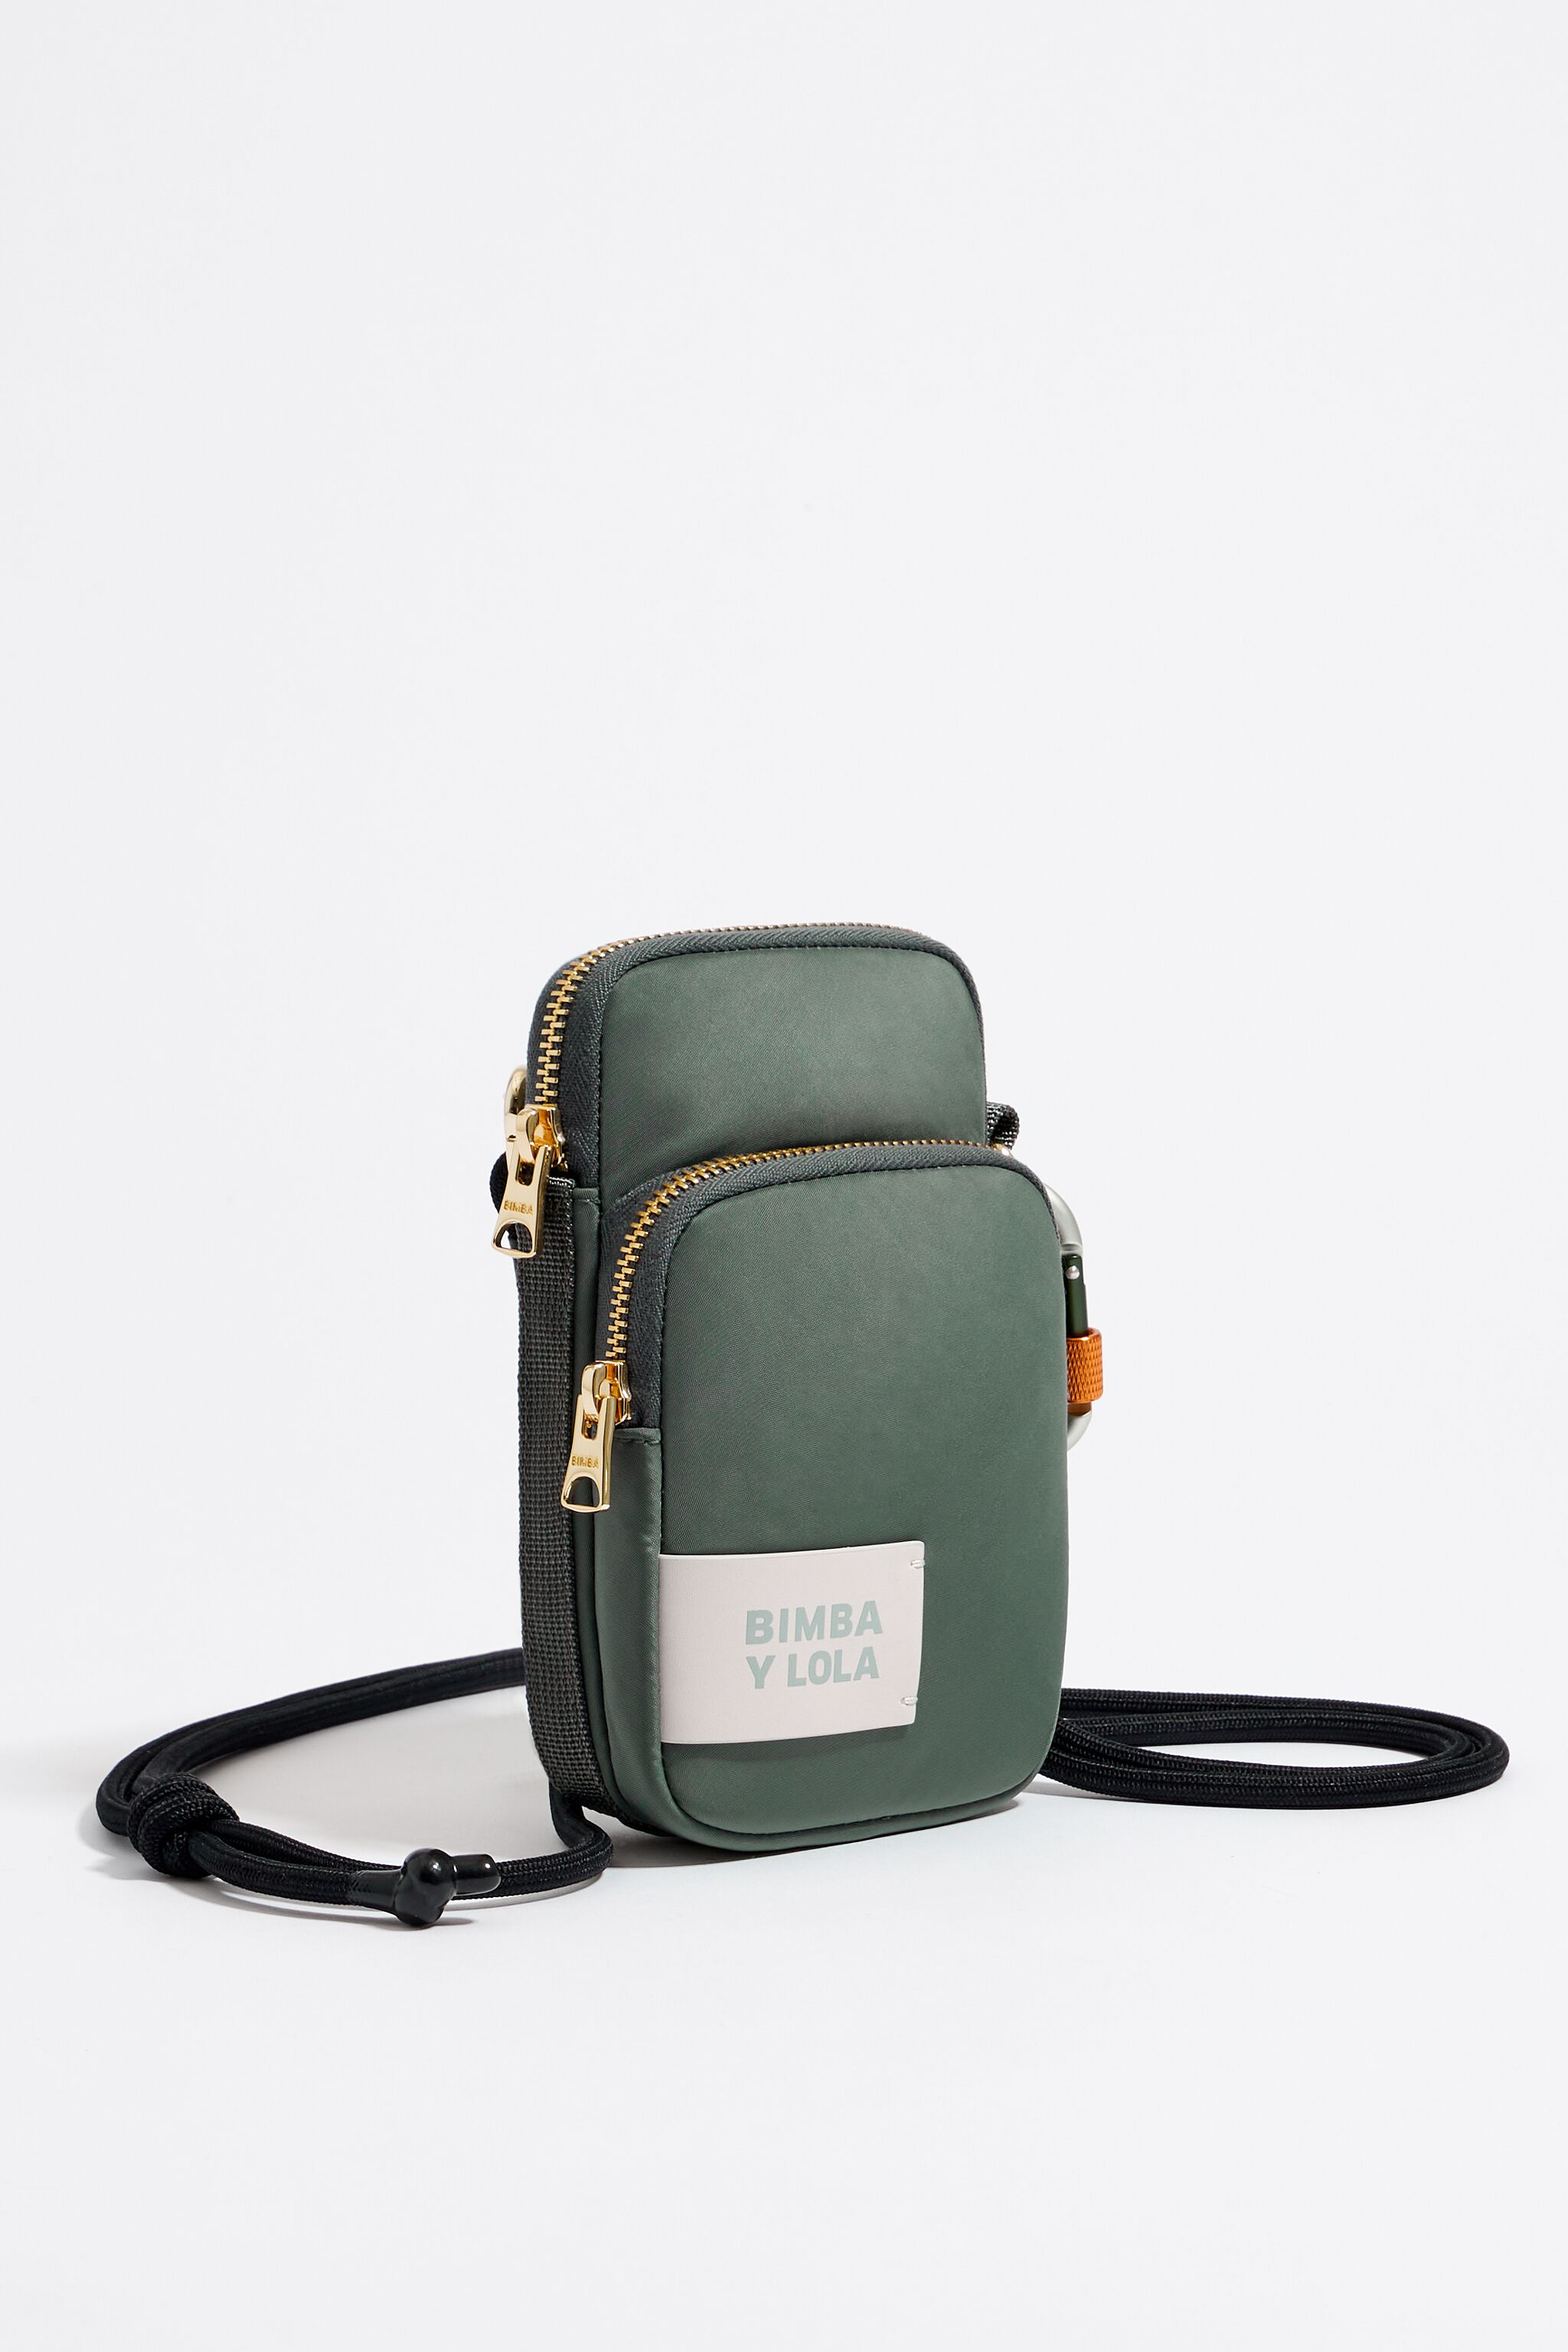 Greenish-gray rectangular mini bag